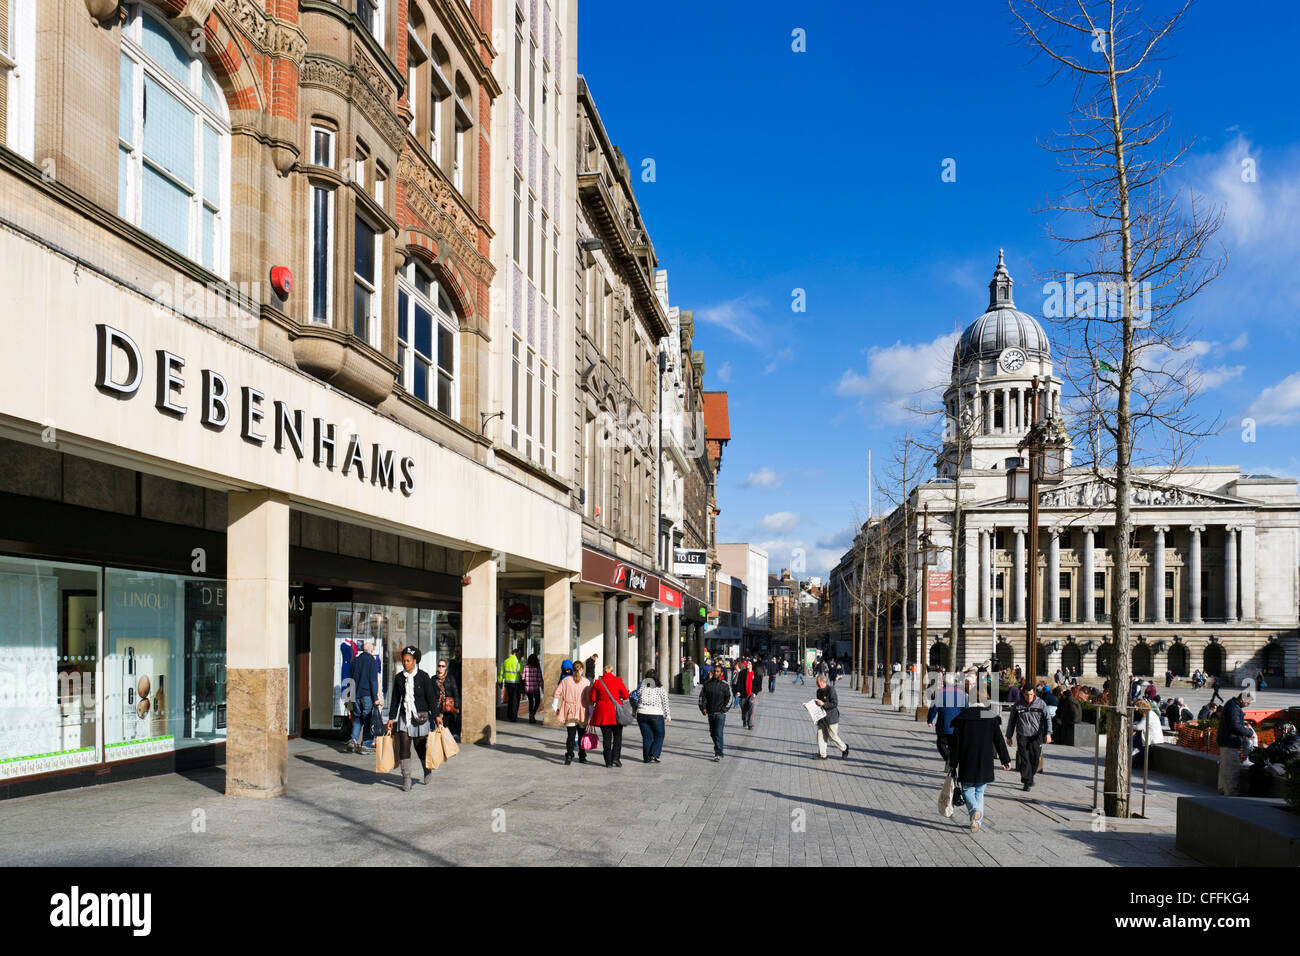 Geschäfte am alten Marktplatz mit dem Rat-Haus (Rathaus) auf der rechten Seite, Nottingham, Nottinghamshire, England, UK Stockfoto